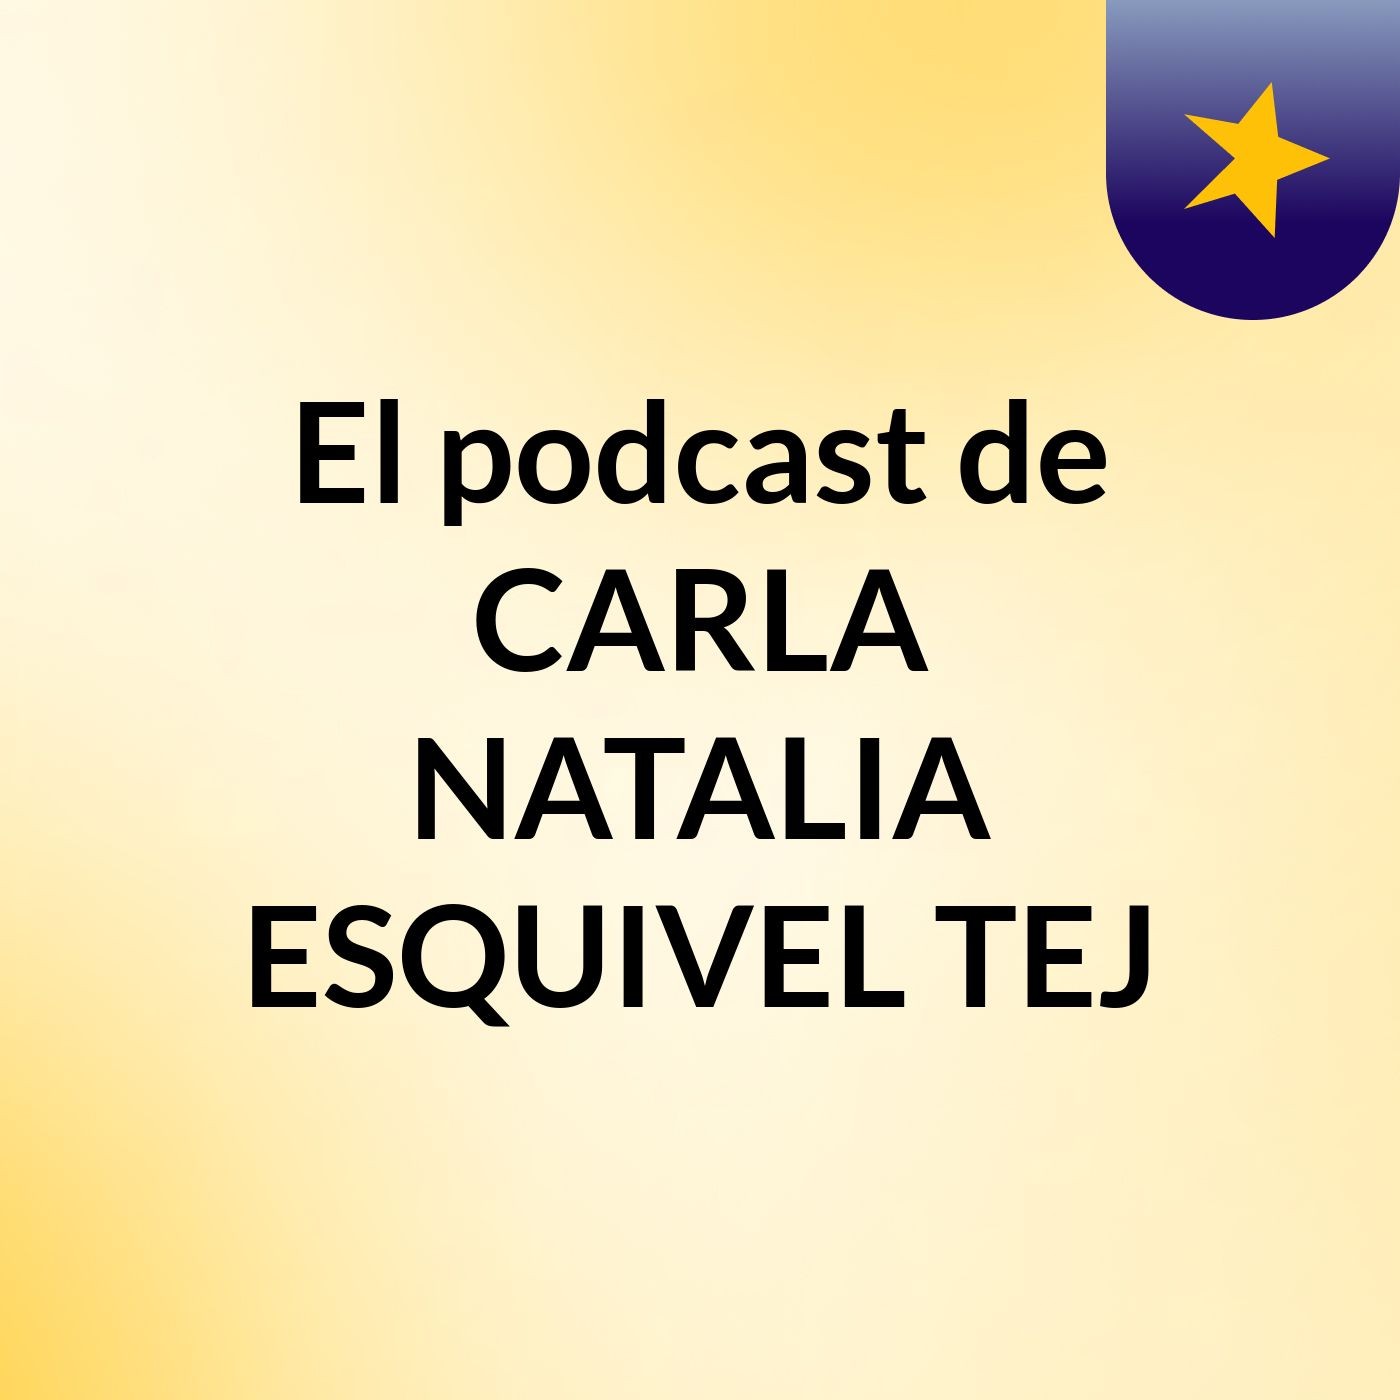 El podcast de CARLA NATALIA ESQUIVEL TEJ